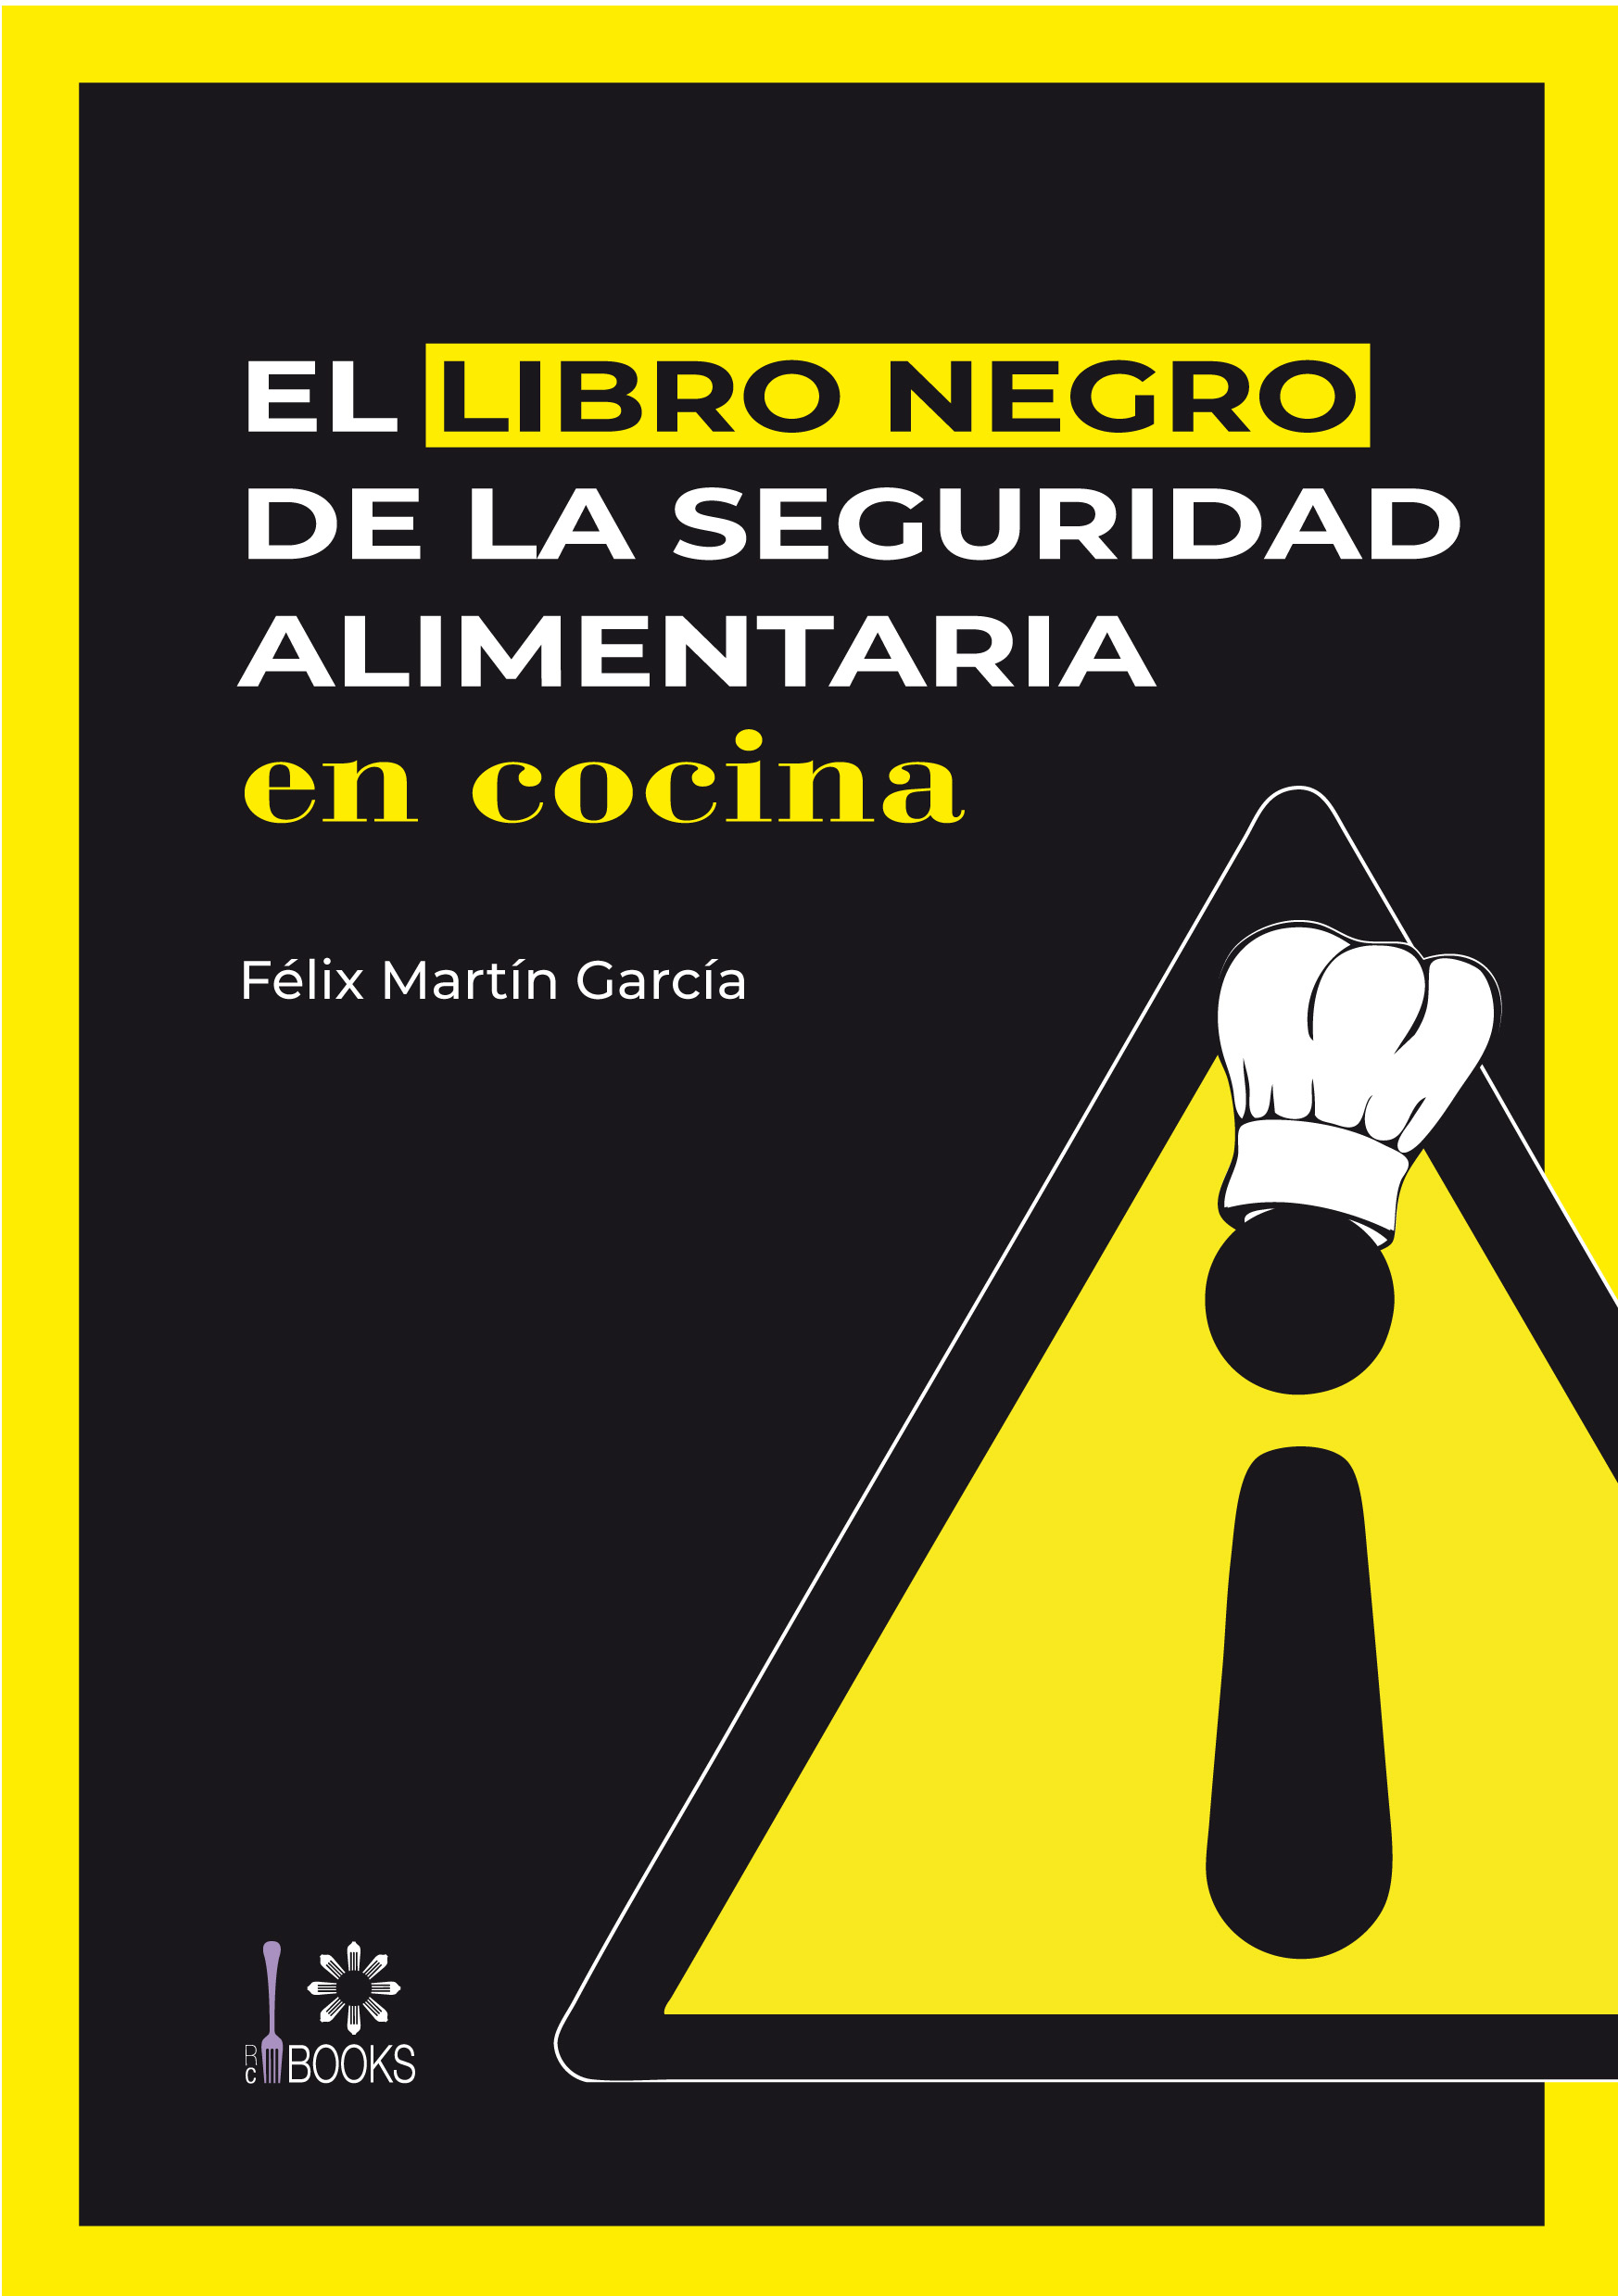 El libro negro de la seguridad alimentaria en cocina, versión papel